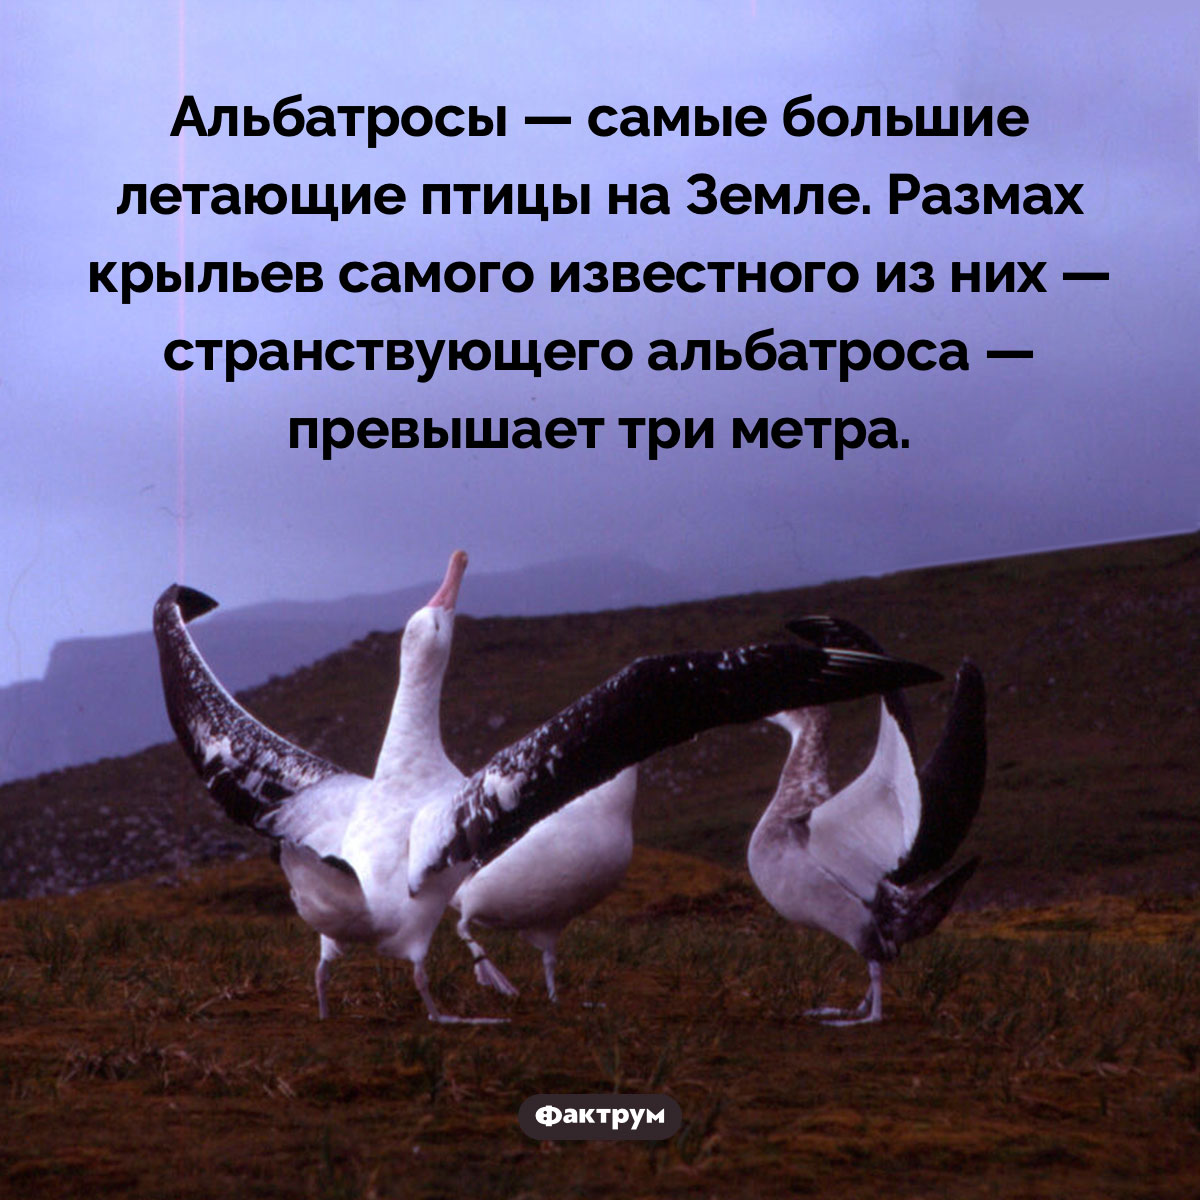 Размах крыльев странствующего альбатроса превышает три метра. Альбатросы — самые большие летающие птицы на Земле. Размах крыльев самого известного из них — странствующего альбатроса — превышает три метра.